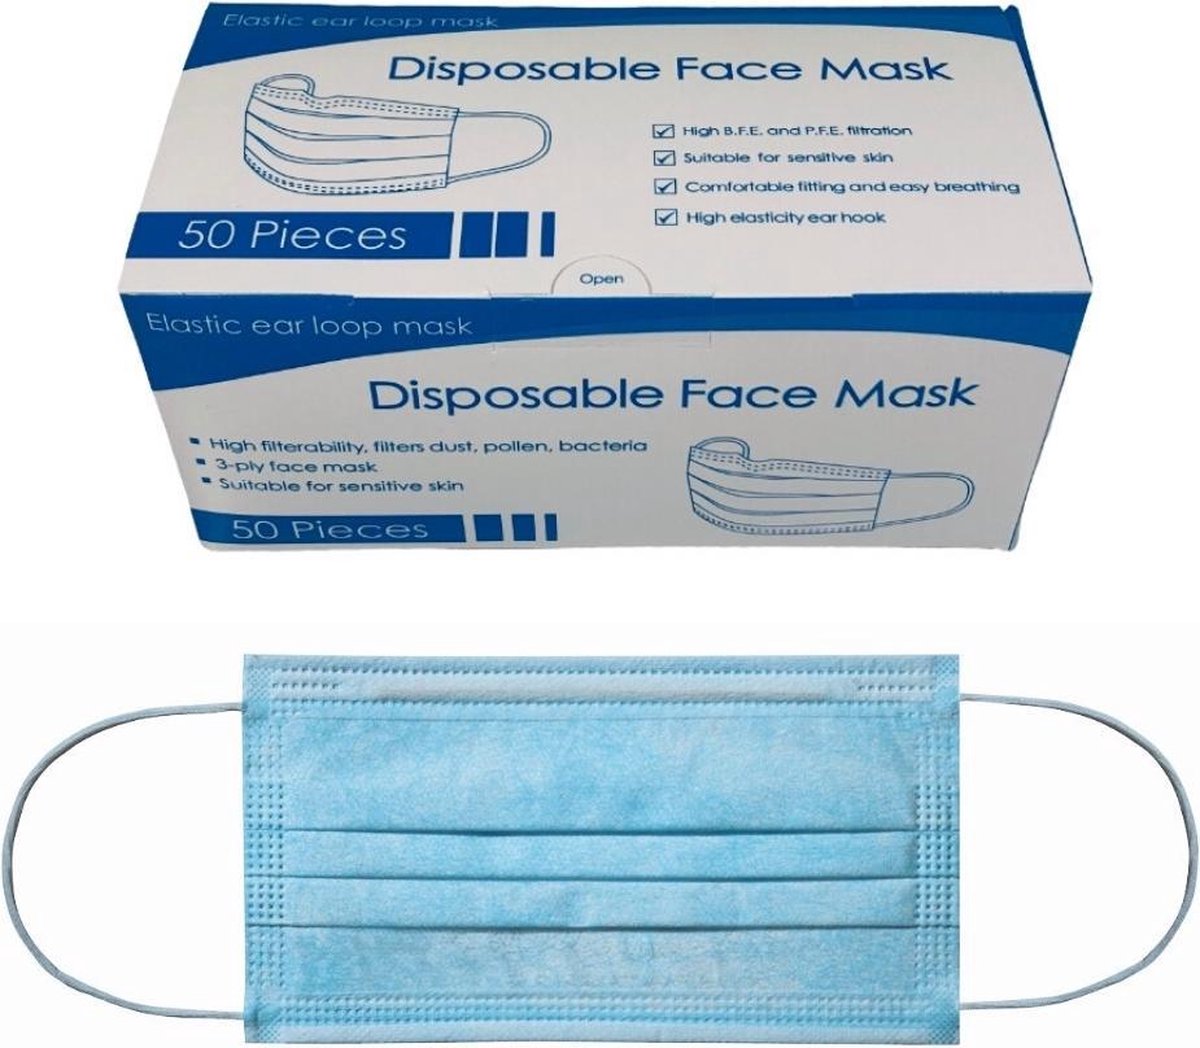 Disposable face mask non medical